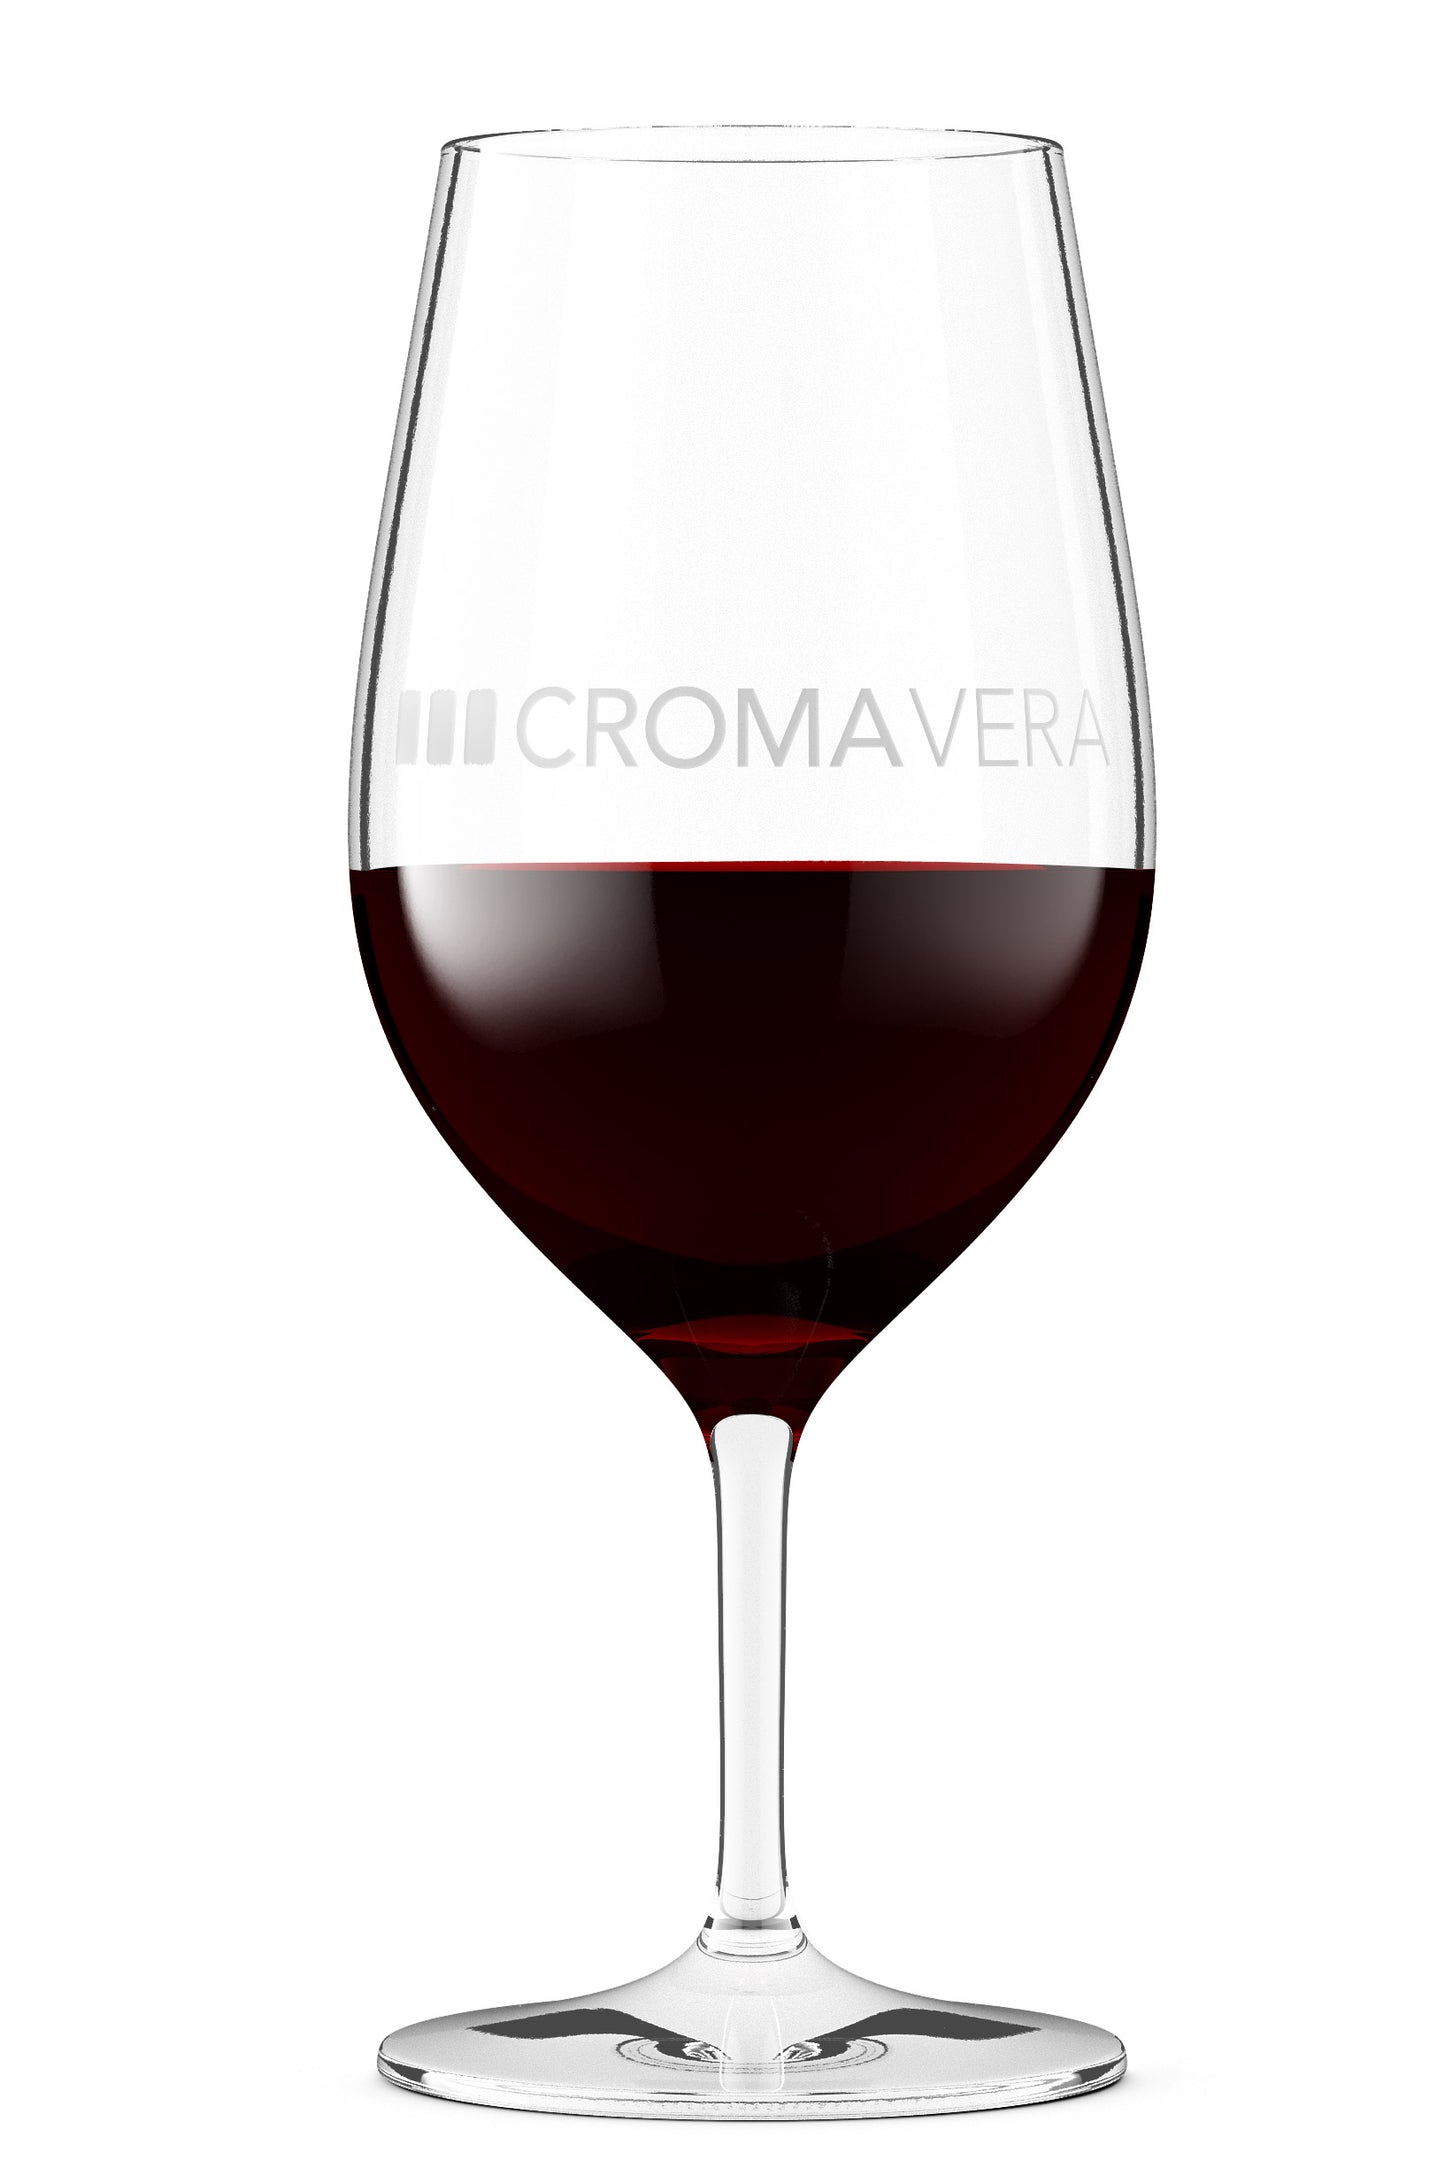 A glass of Croma Vera Grenache red wine